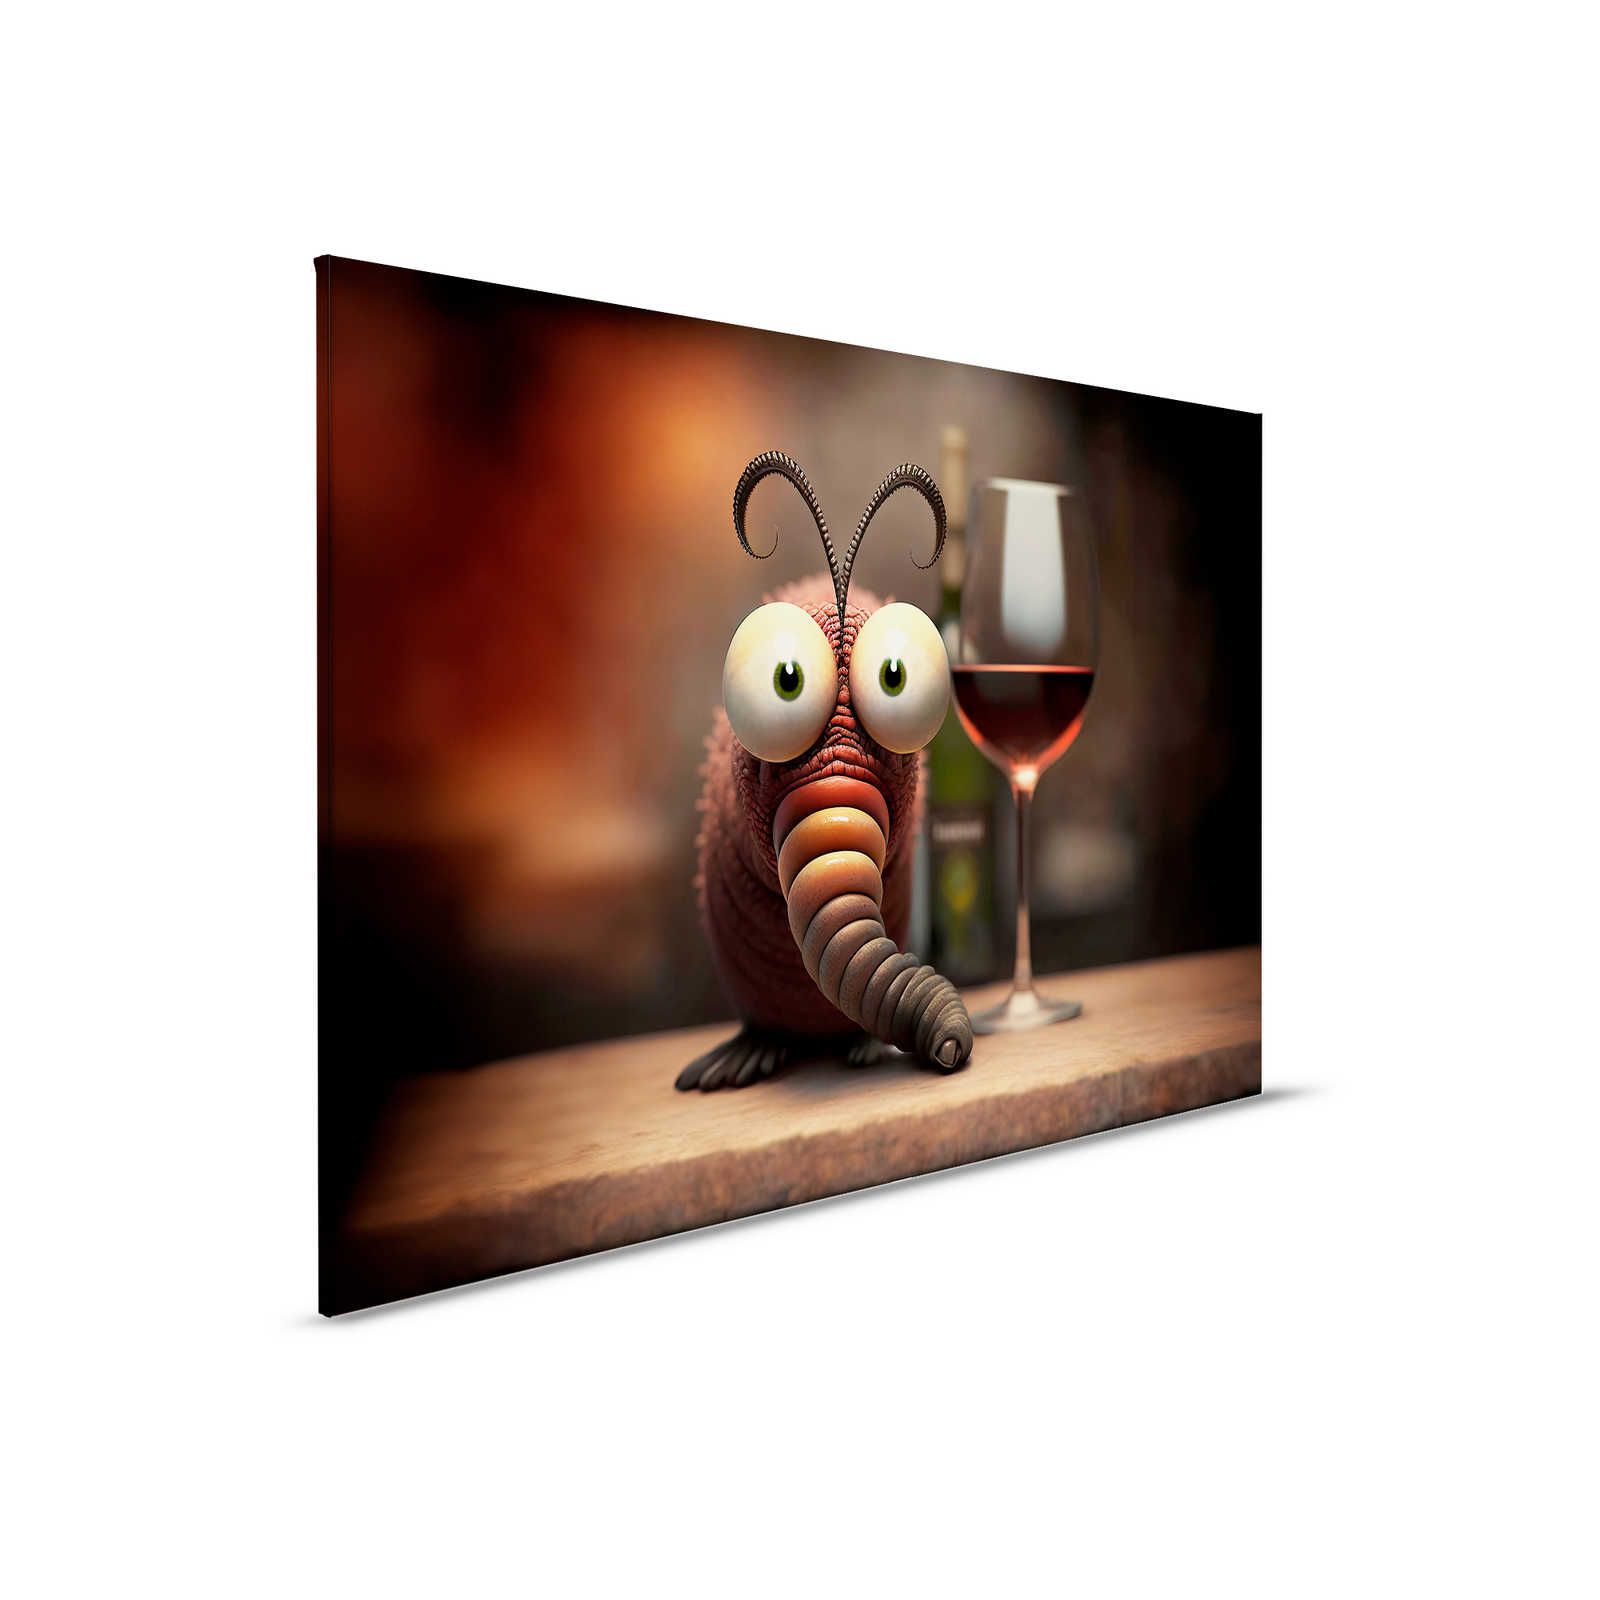 KI Canvas schilderij »winig worm« - 90 cm x 60 cm
